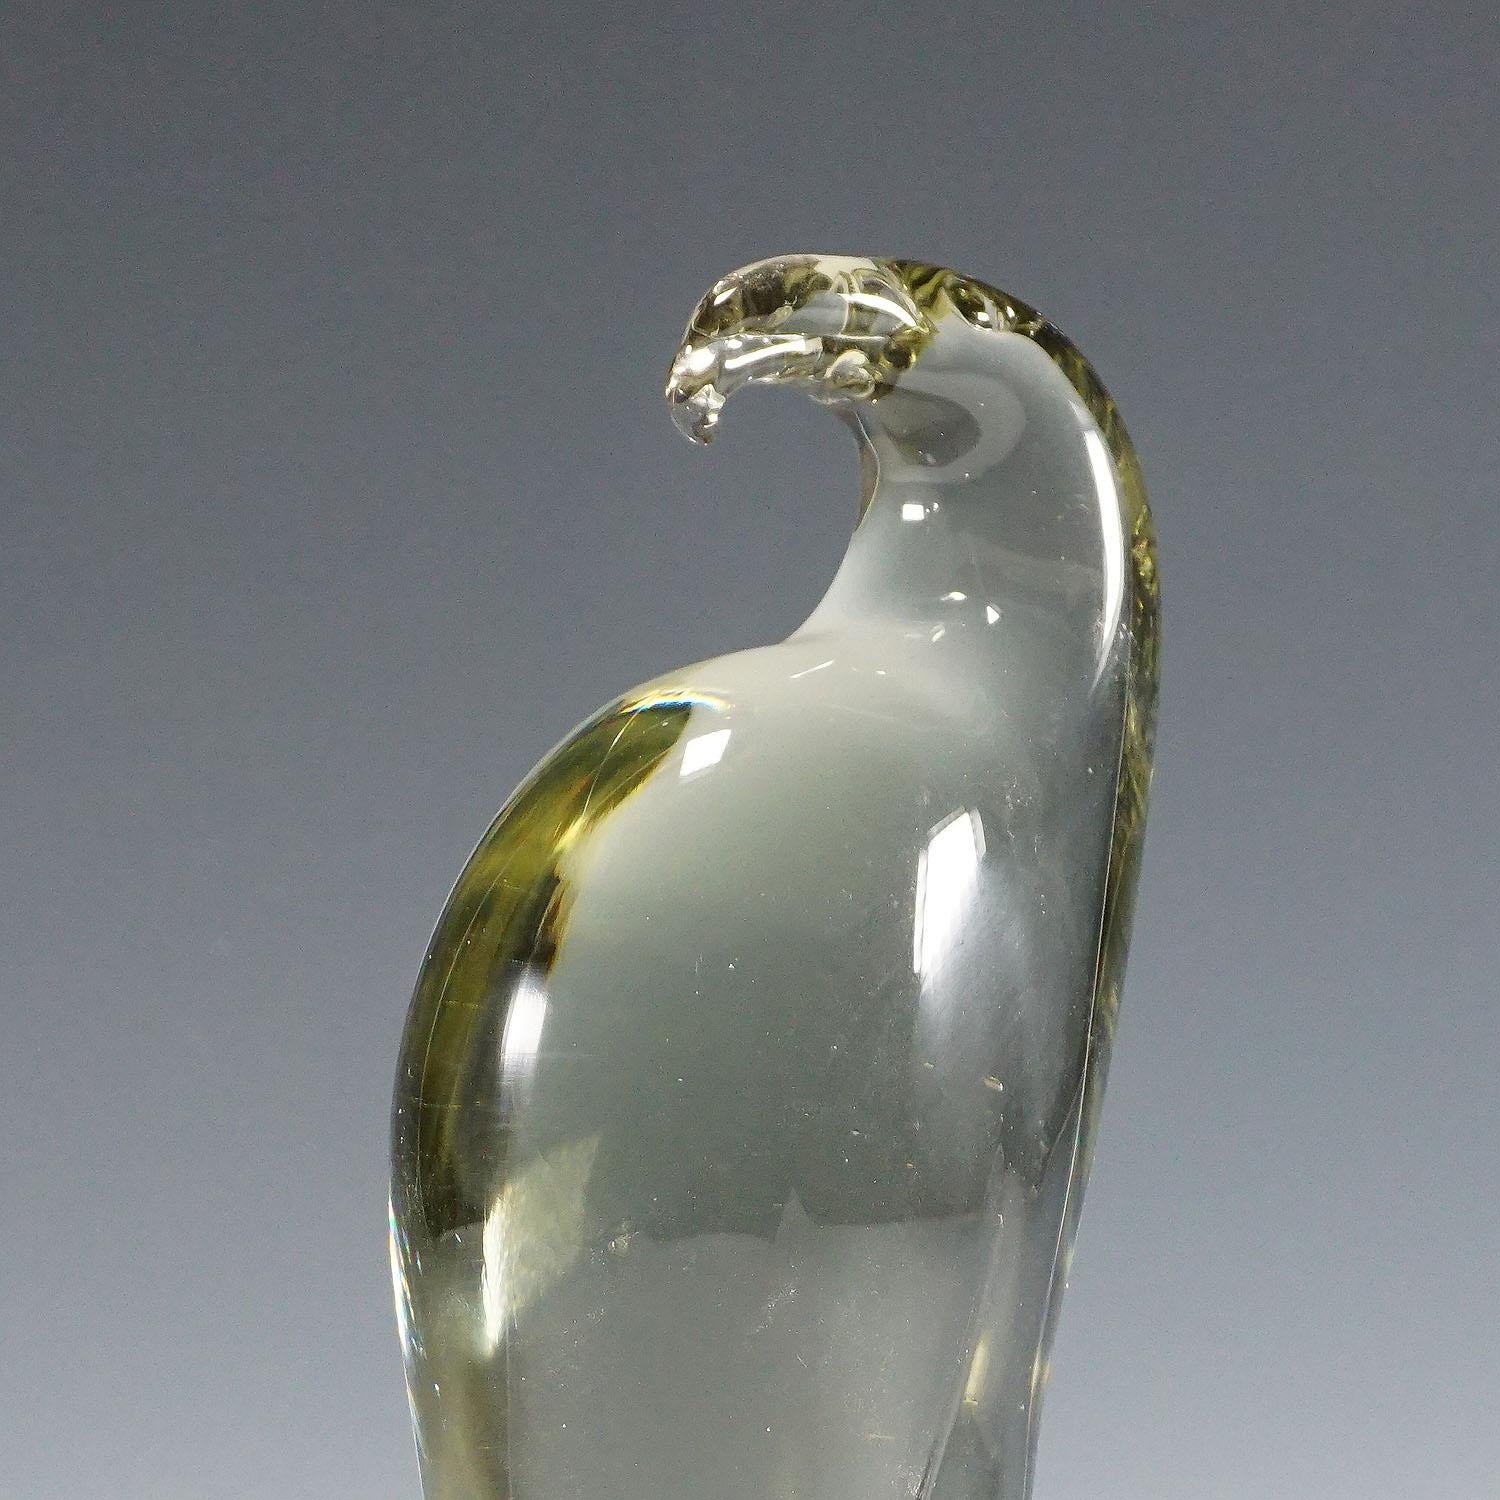 Sculpture d'un aigle stylisé en verre gris fumée. Fabriqué à la main dans la manufacture de verre Gral, en Allemagne. Conçu par Livio Seguso, vers 1970. Base avec signature incisée de l'artiste (LS).

Livio Seguso (* 1930) est issu d'une famille de